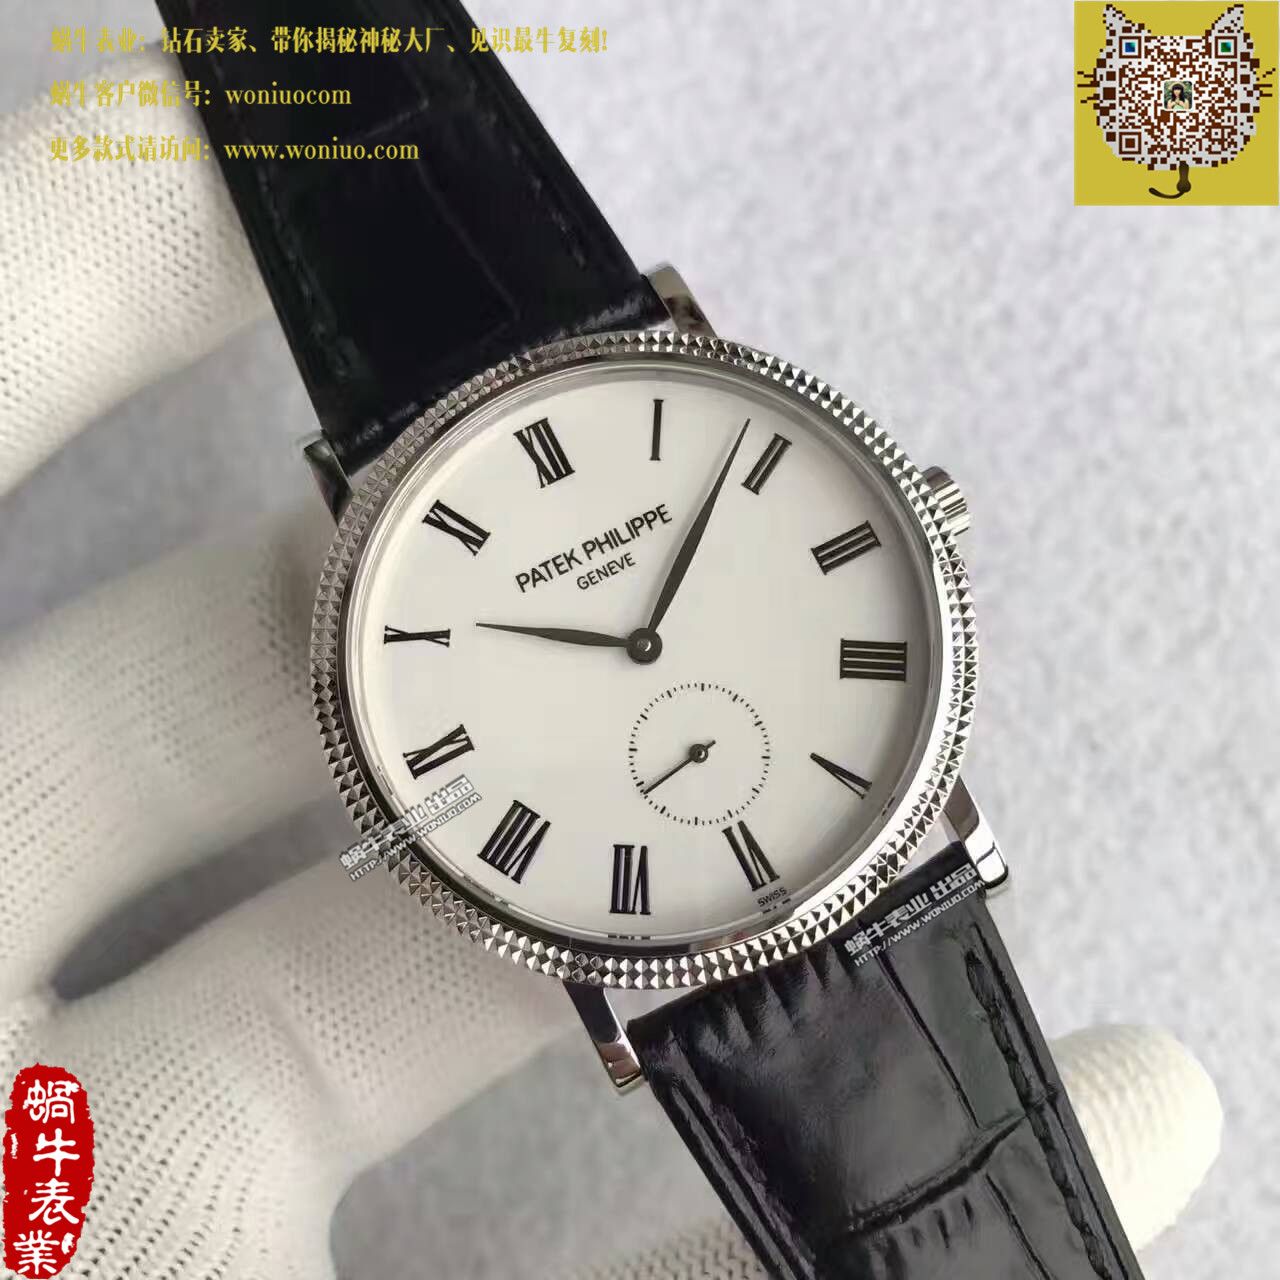 【台湾厂一比一超A精仿手表】百达翡丽古典表系列5119G-001腕表 / BD206